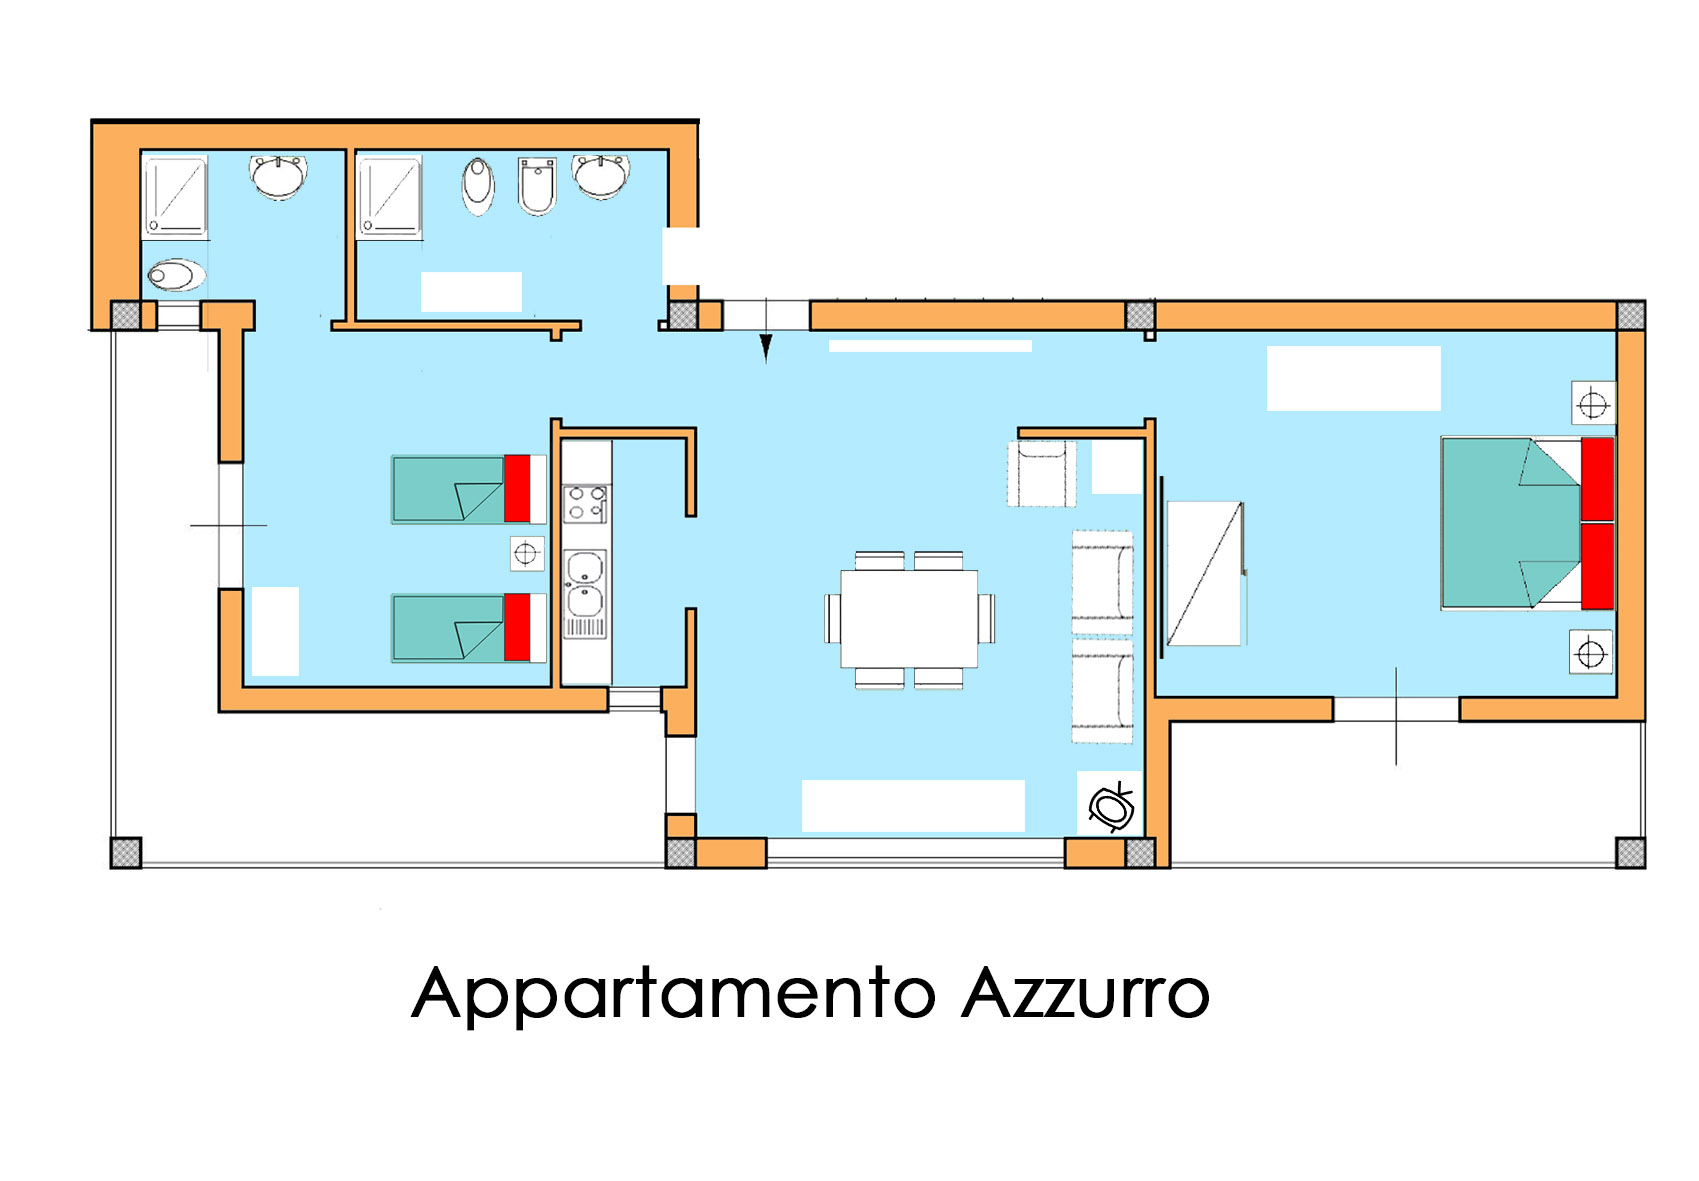 Appartamento Azzurro